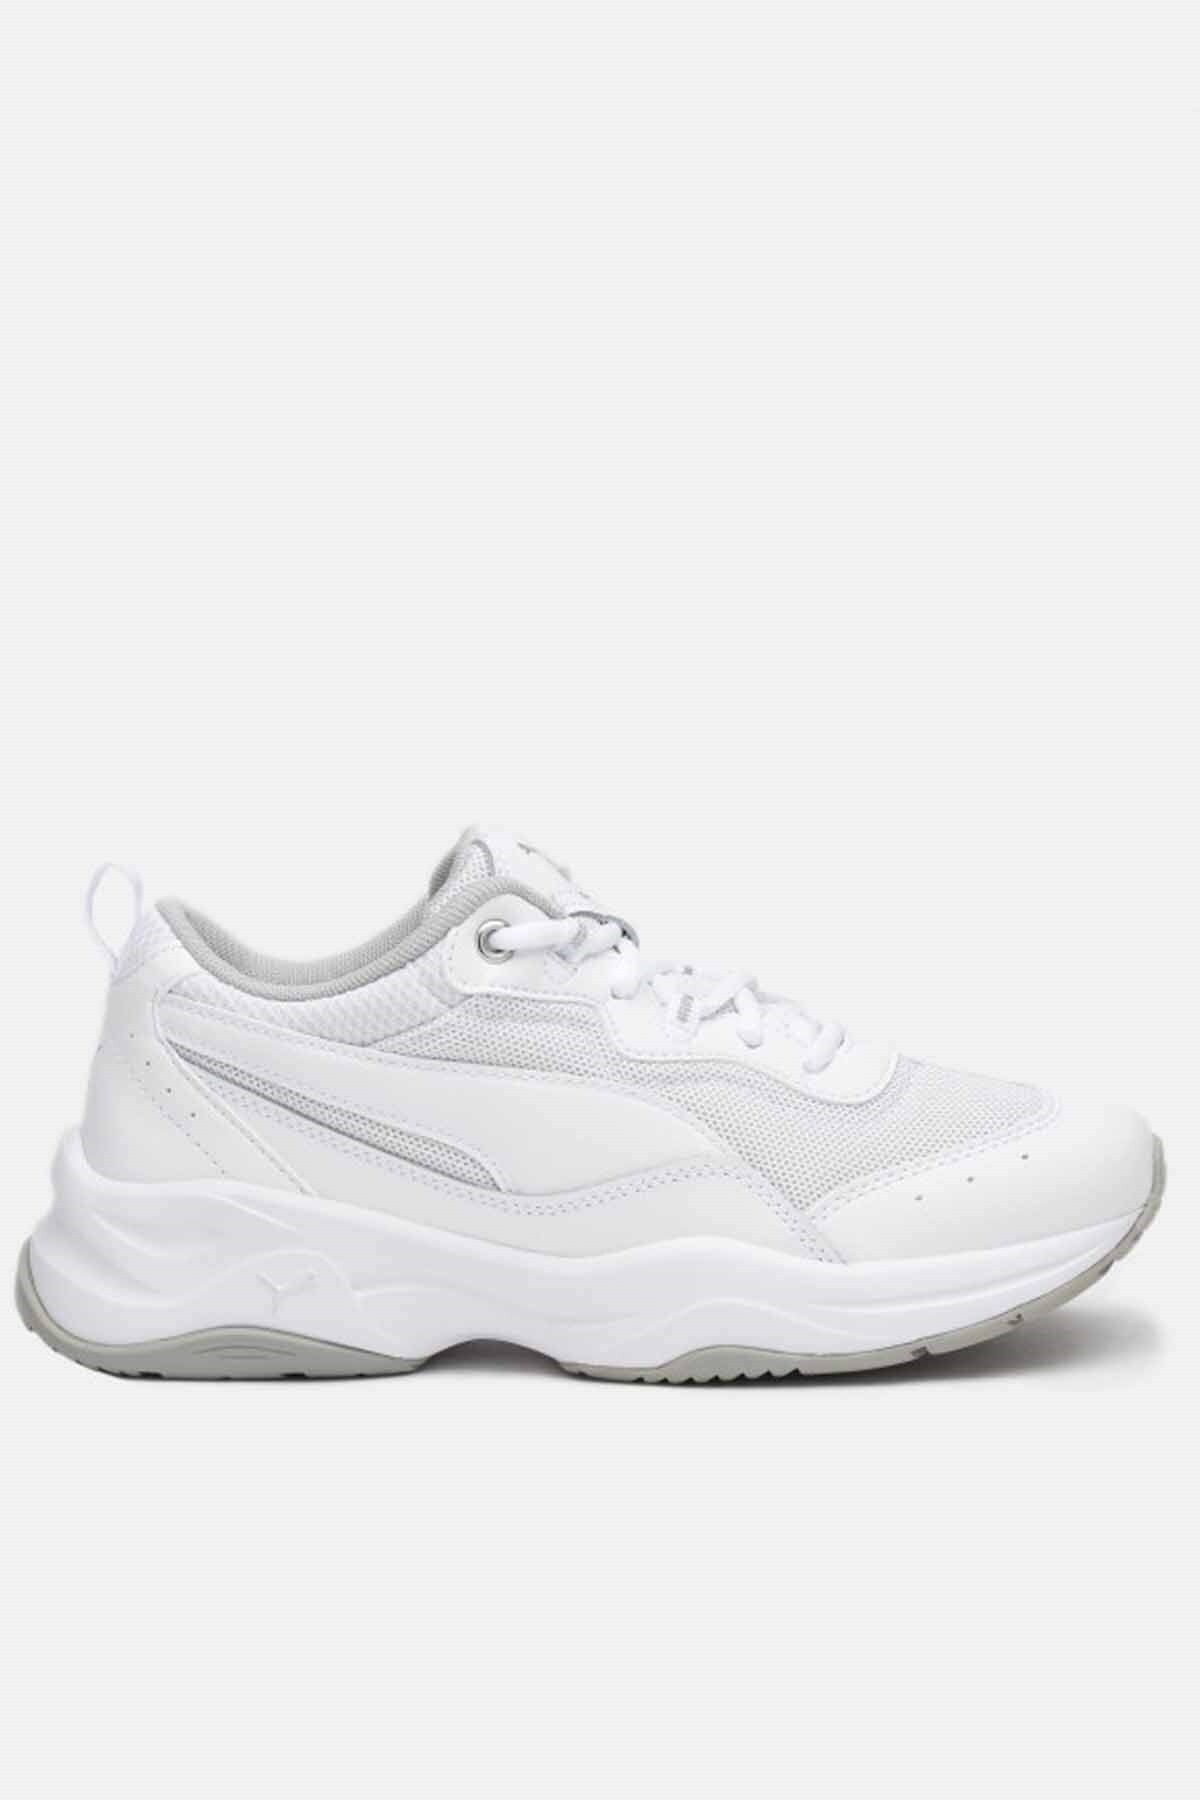 Puma Cilia Patent Sl Kadın Günlük Spor Ayakkabı 372500-001 Beyaz